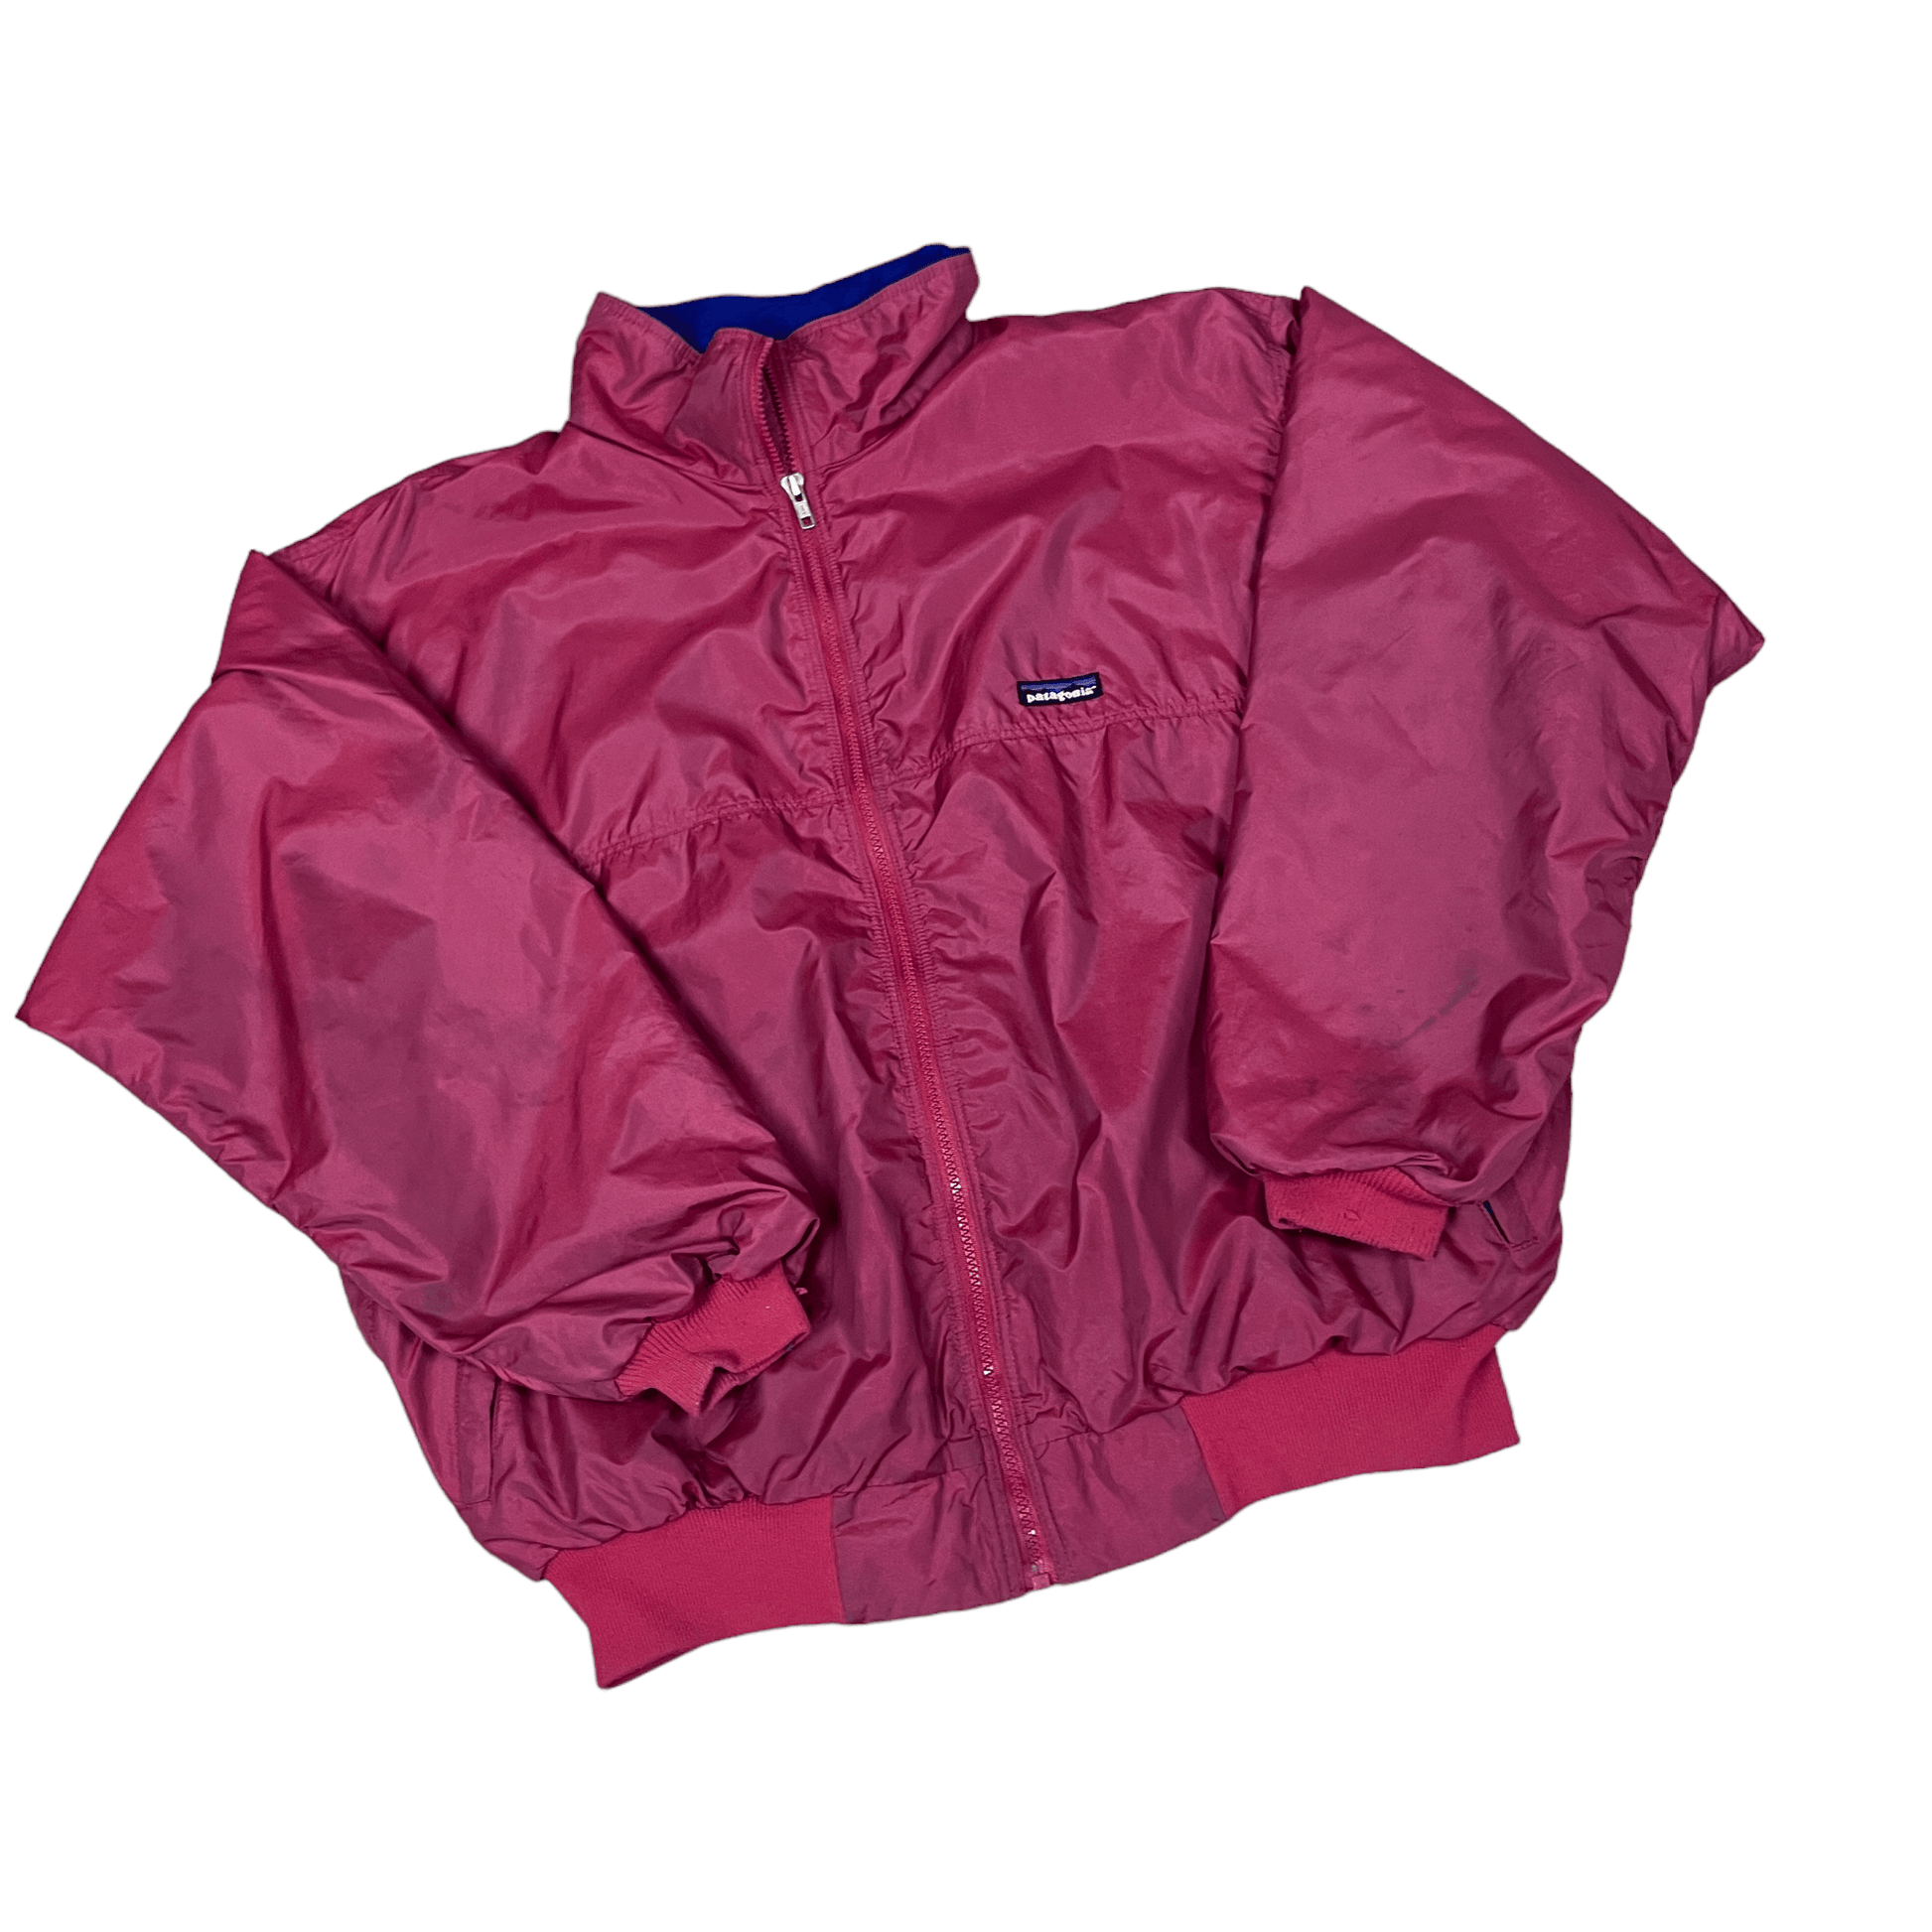 Vintage 90s Burgundy Patagonia Jacket - Extra Large - The Streetwear Studio